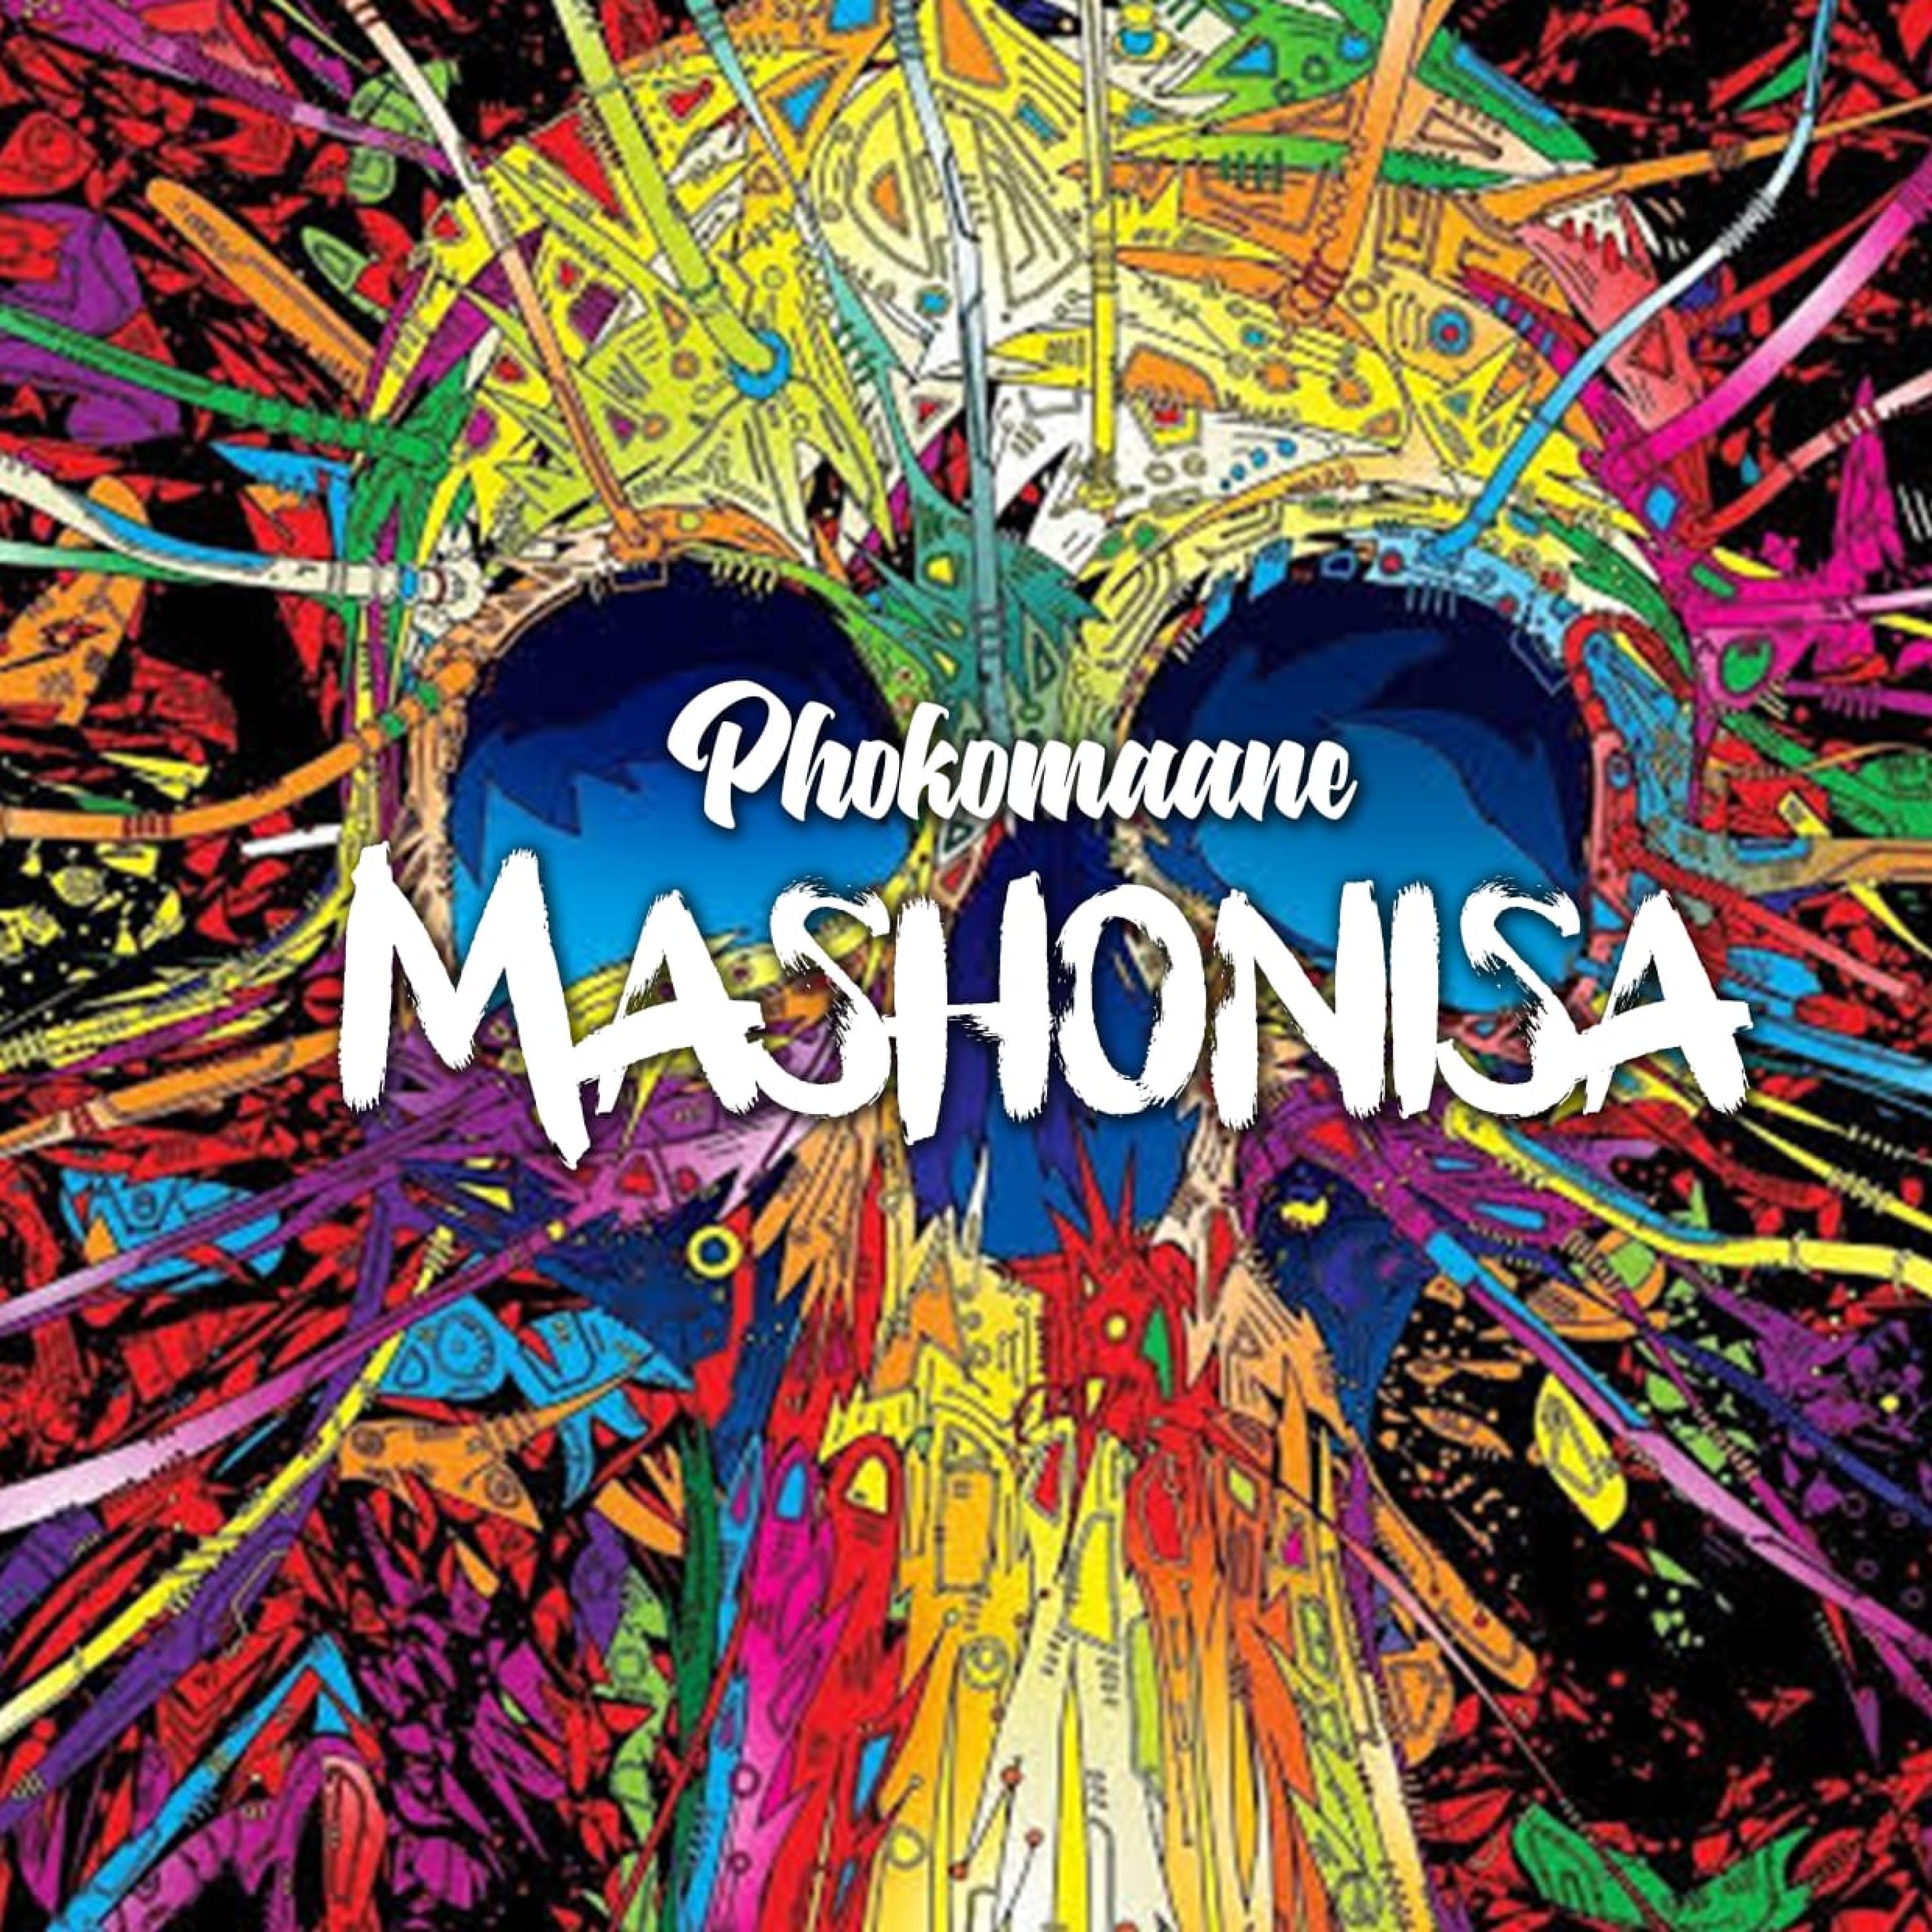 Phokomaane - Mashonisa